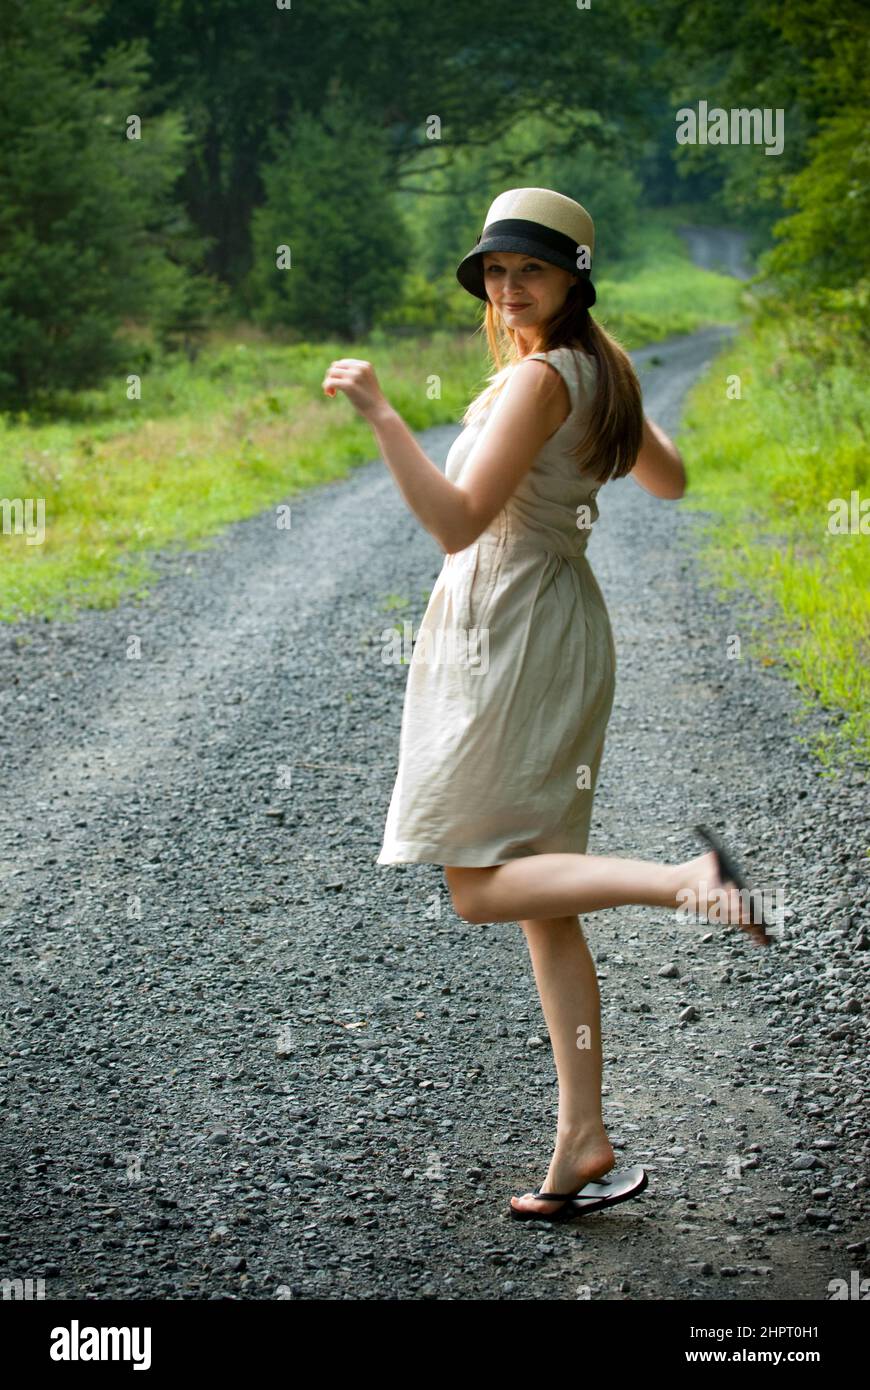 Eine junge Frau, die sich auf einer Schotterstraße die Fersen hochkickt Stockfoto